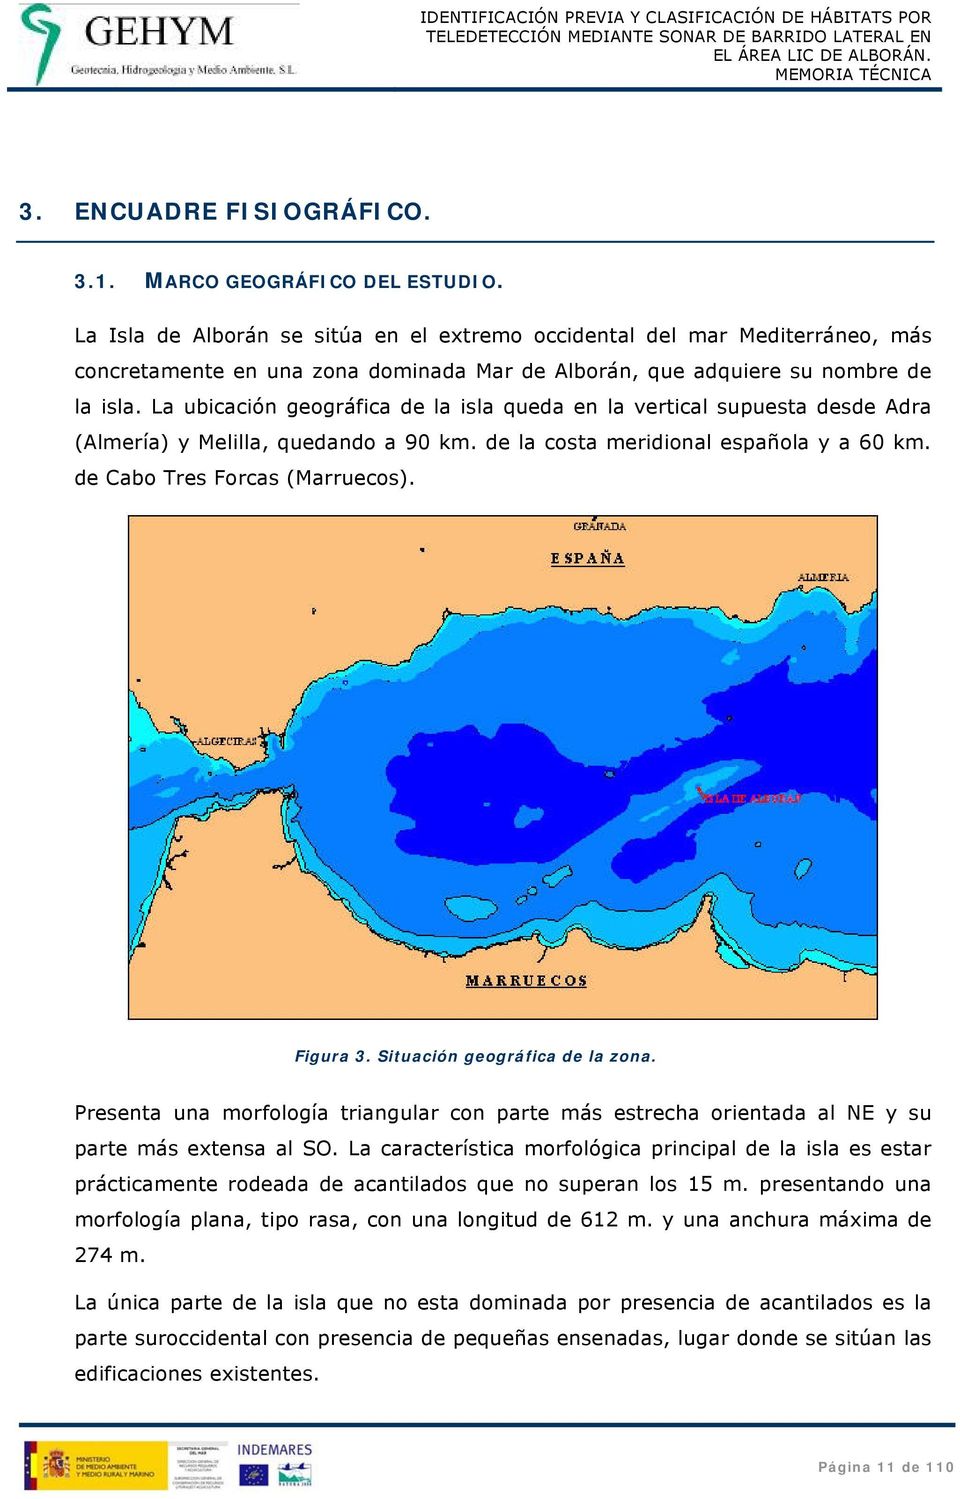 La ubicación geográfica de la isla queda en la vertical supuesta desde Adra (Almería) y Melilla, quedando a 90 km. de la costa meridional española y a 60 km. de Cabo Tres Forcas (Marruecos). Figura 3.